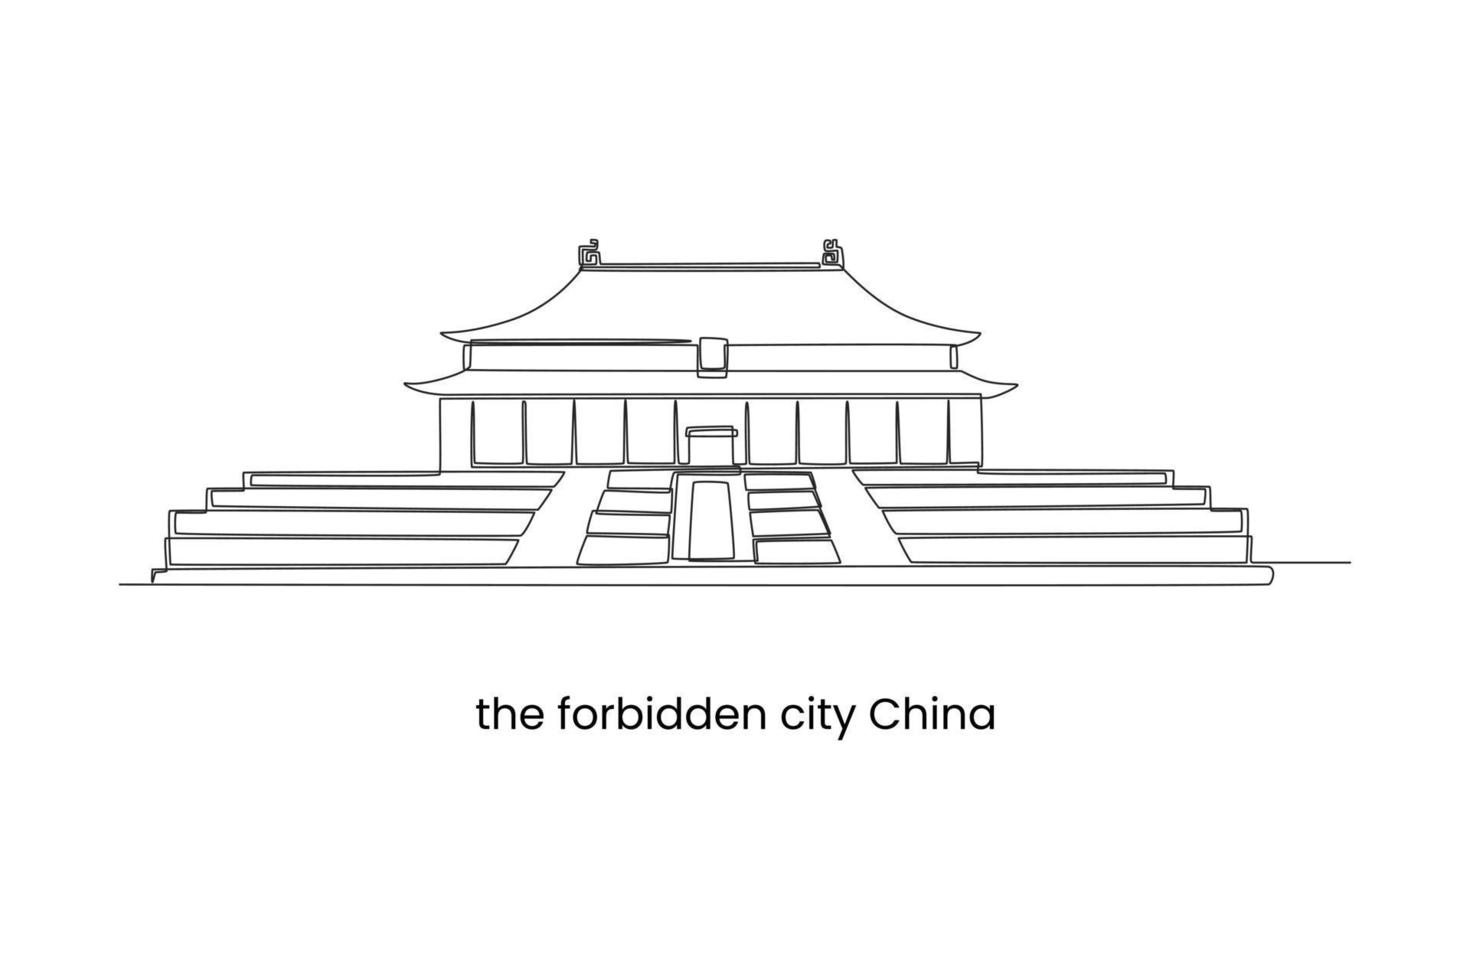 kontinuerlig ett linje teckning de förbjuden stad i Beijing, Kina. landmärken begrepp. enda linje dra design vektor grafisk illustration.